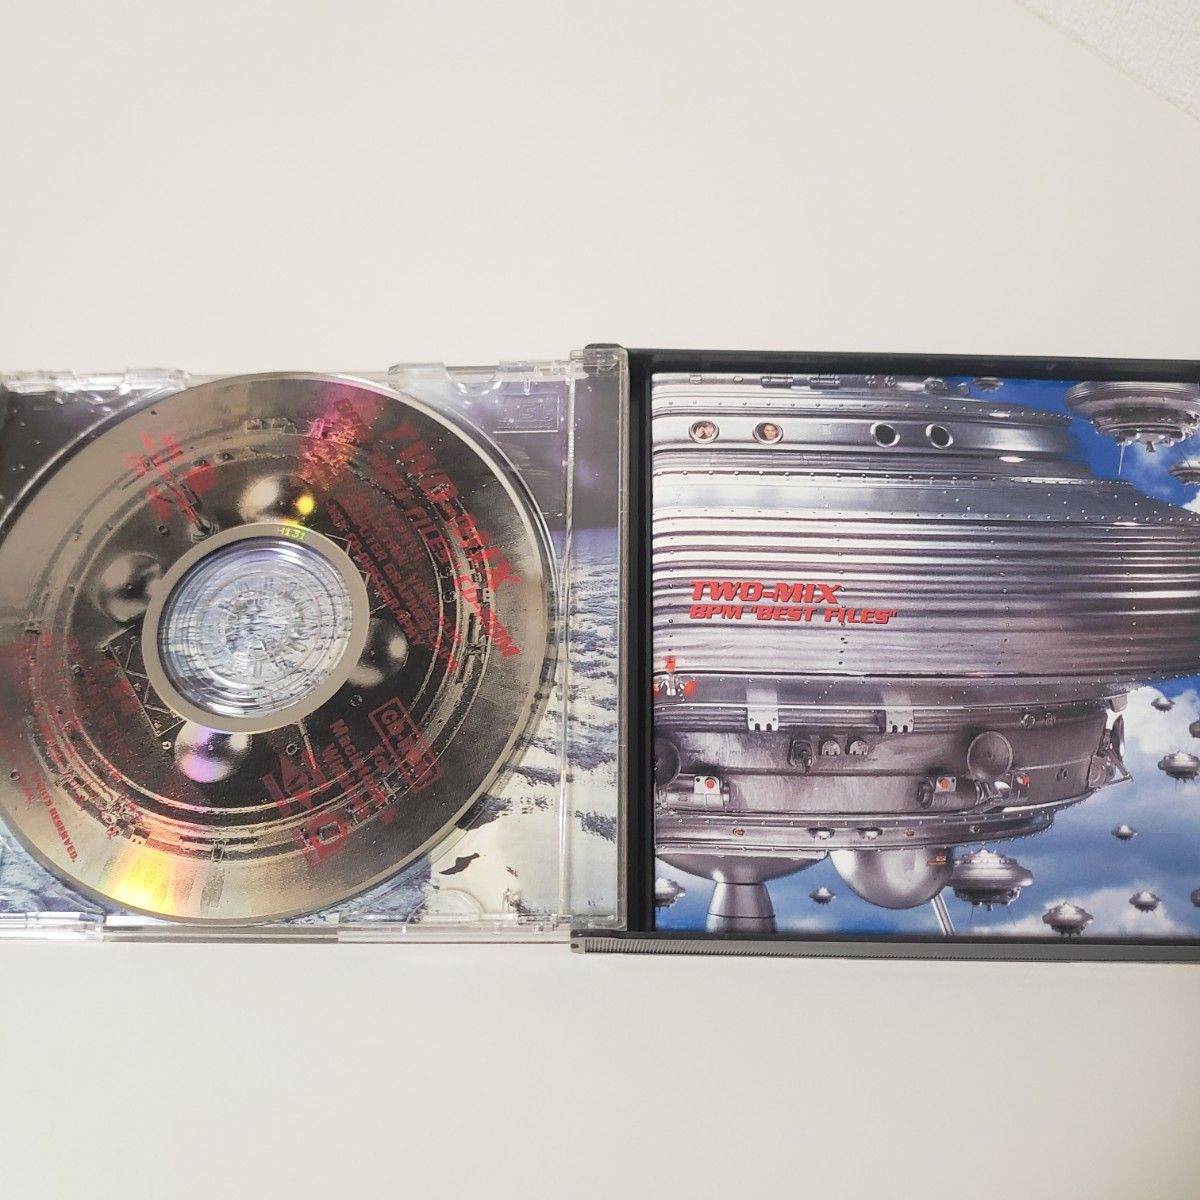 TWO-MIX BPM BEST FILES ガンダムW 名探偵コナン CD アルバム ガンダムウイング